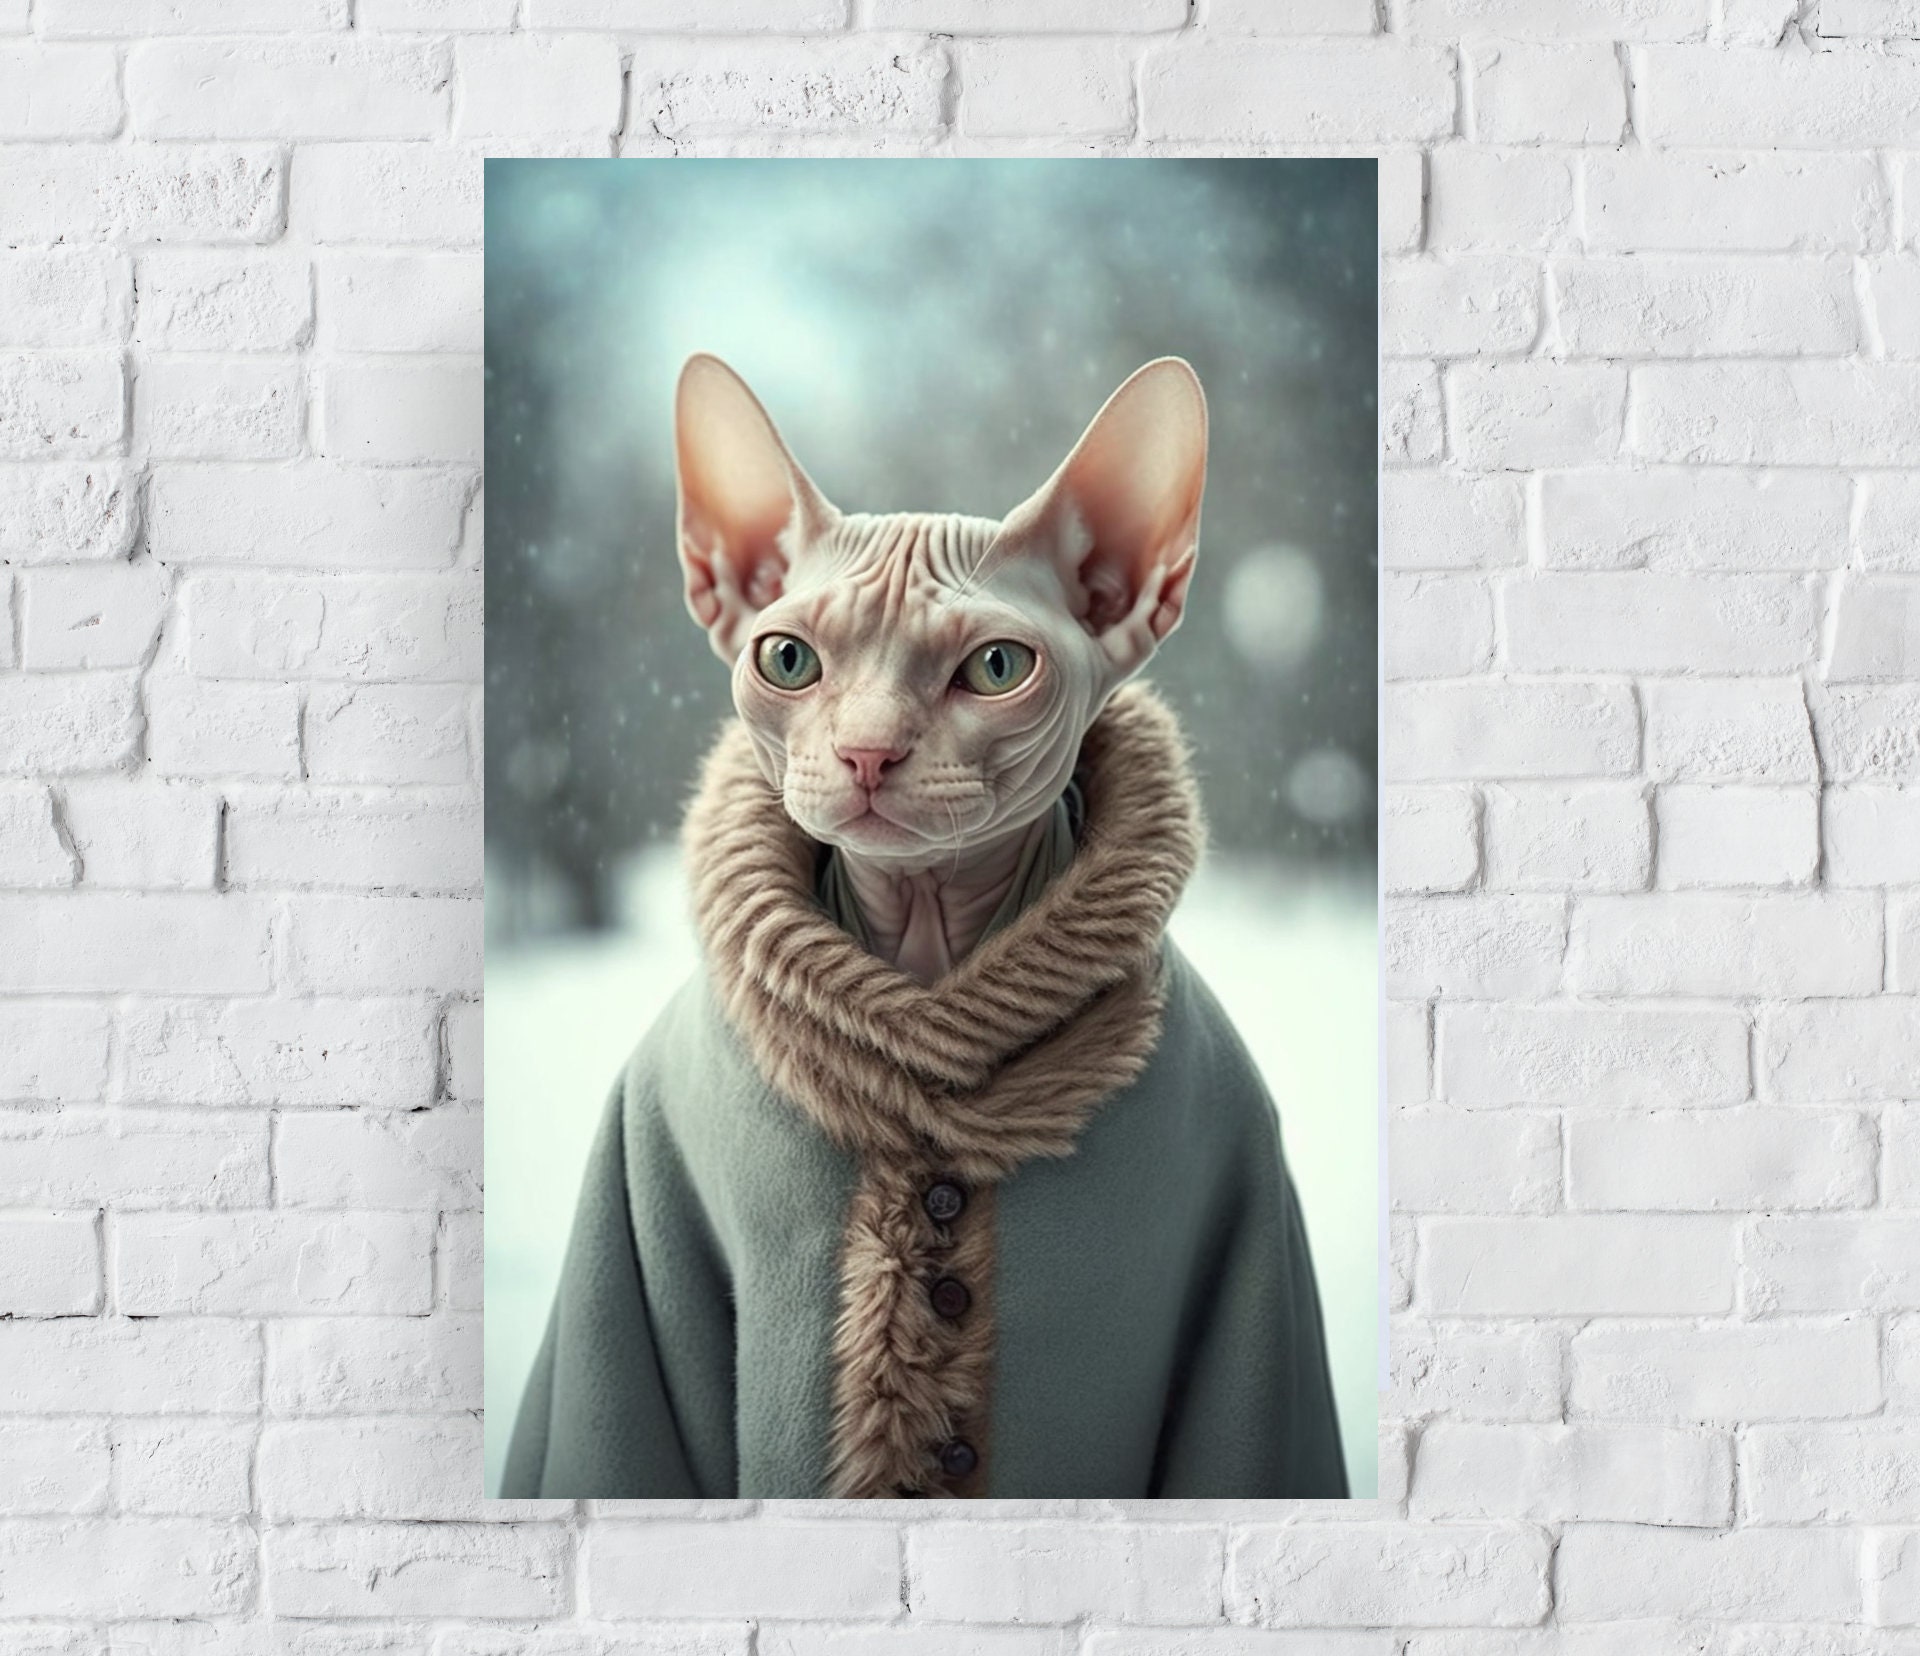 Awesome Cat Coat Velvet Sweater for Sphynx Cat Hairless Cat 